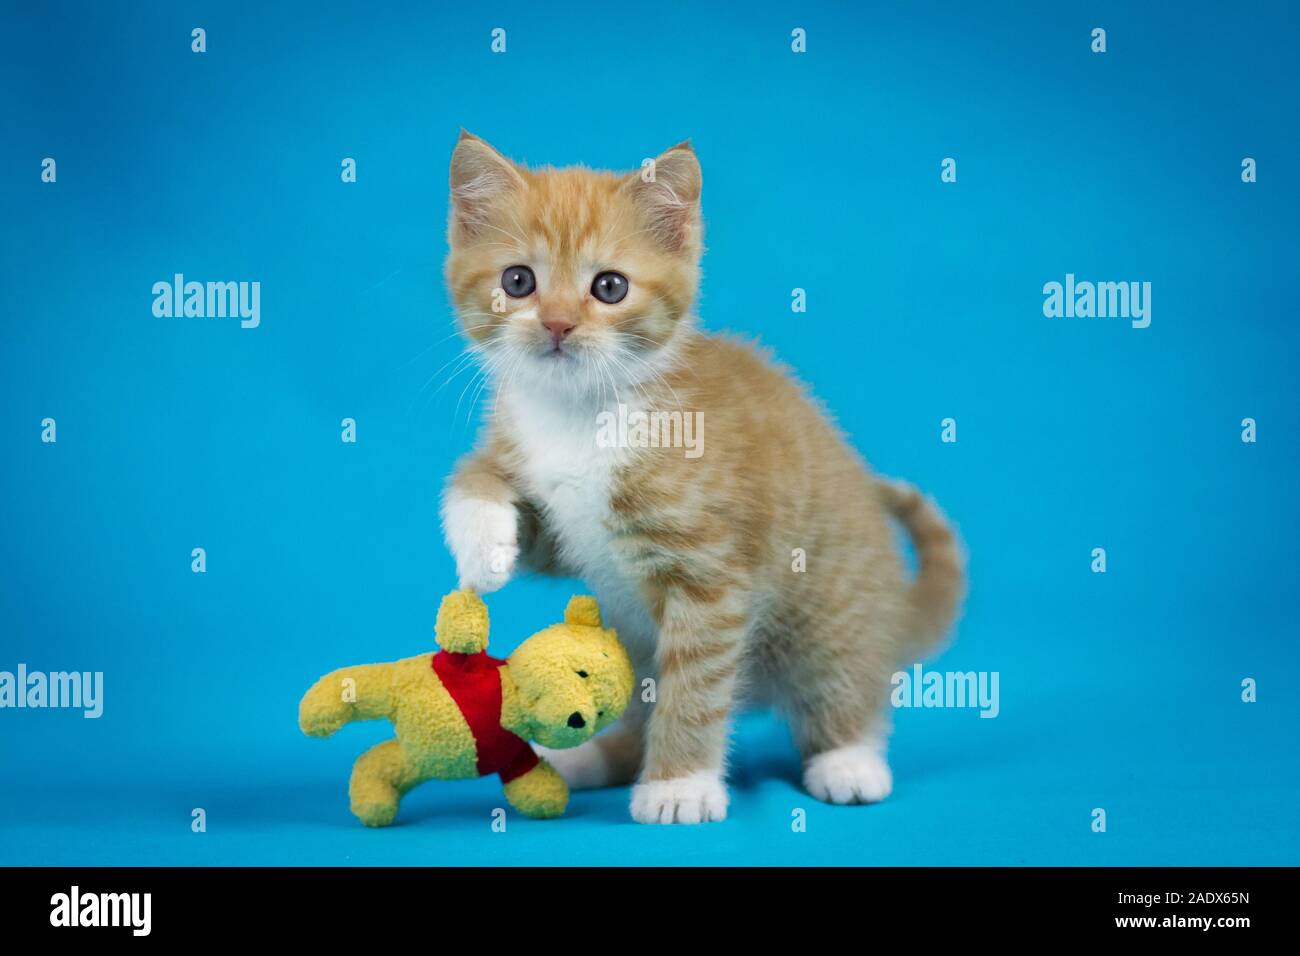 Red tabby adorable chaton jouant avec un ours, la photographie de studio avec fond bleu Banque D'Images